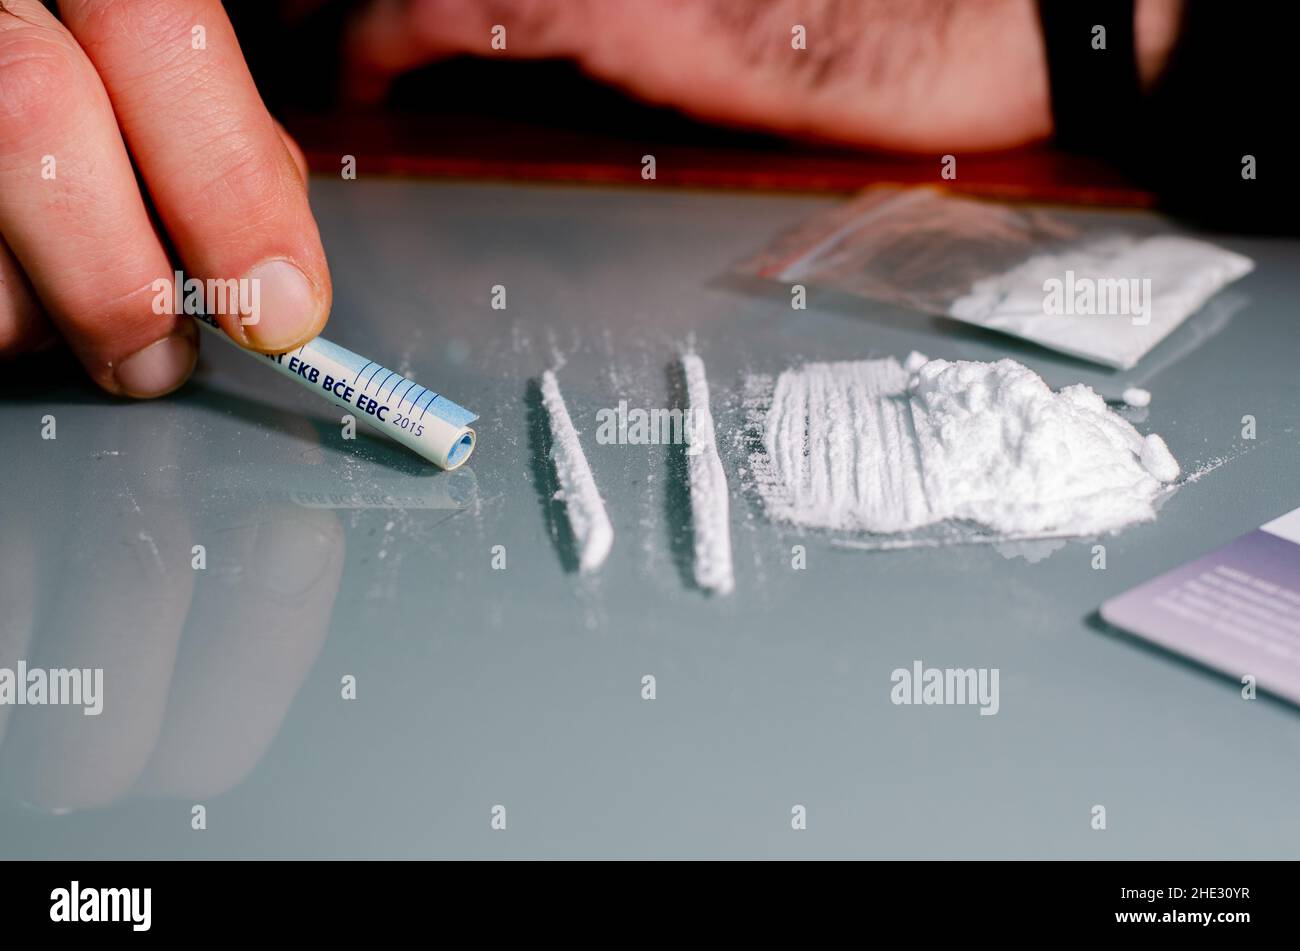 L'homme est sur le point d'arrater de la cocaïne avec des billets de banque roulés.Concept de narcotiques. Banque D'Images